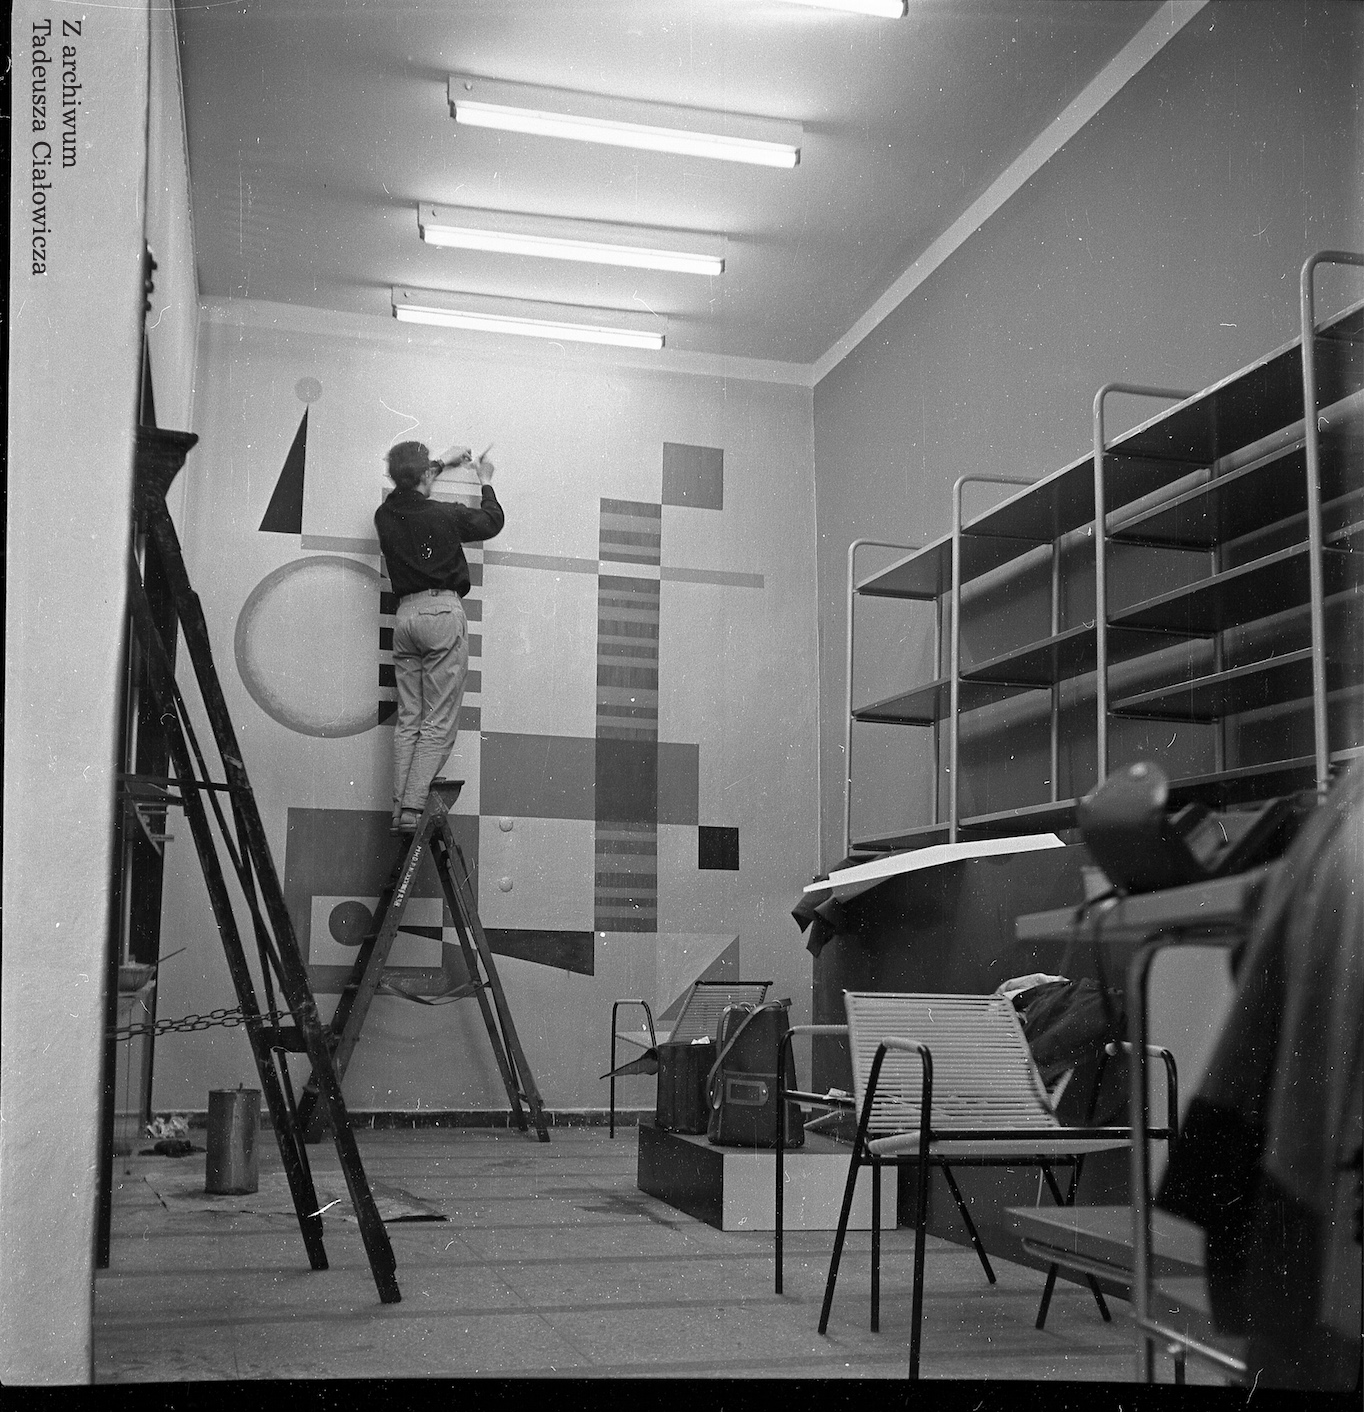 Malarstwo, sklep w Dzierżoniowie, proj. Tadeusz Ciałowicz, 1960 (źródło: materiały prasowe organizatora)